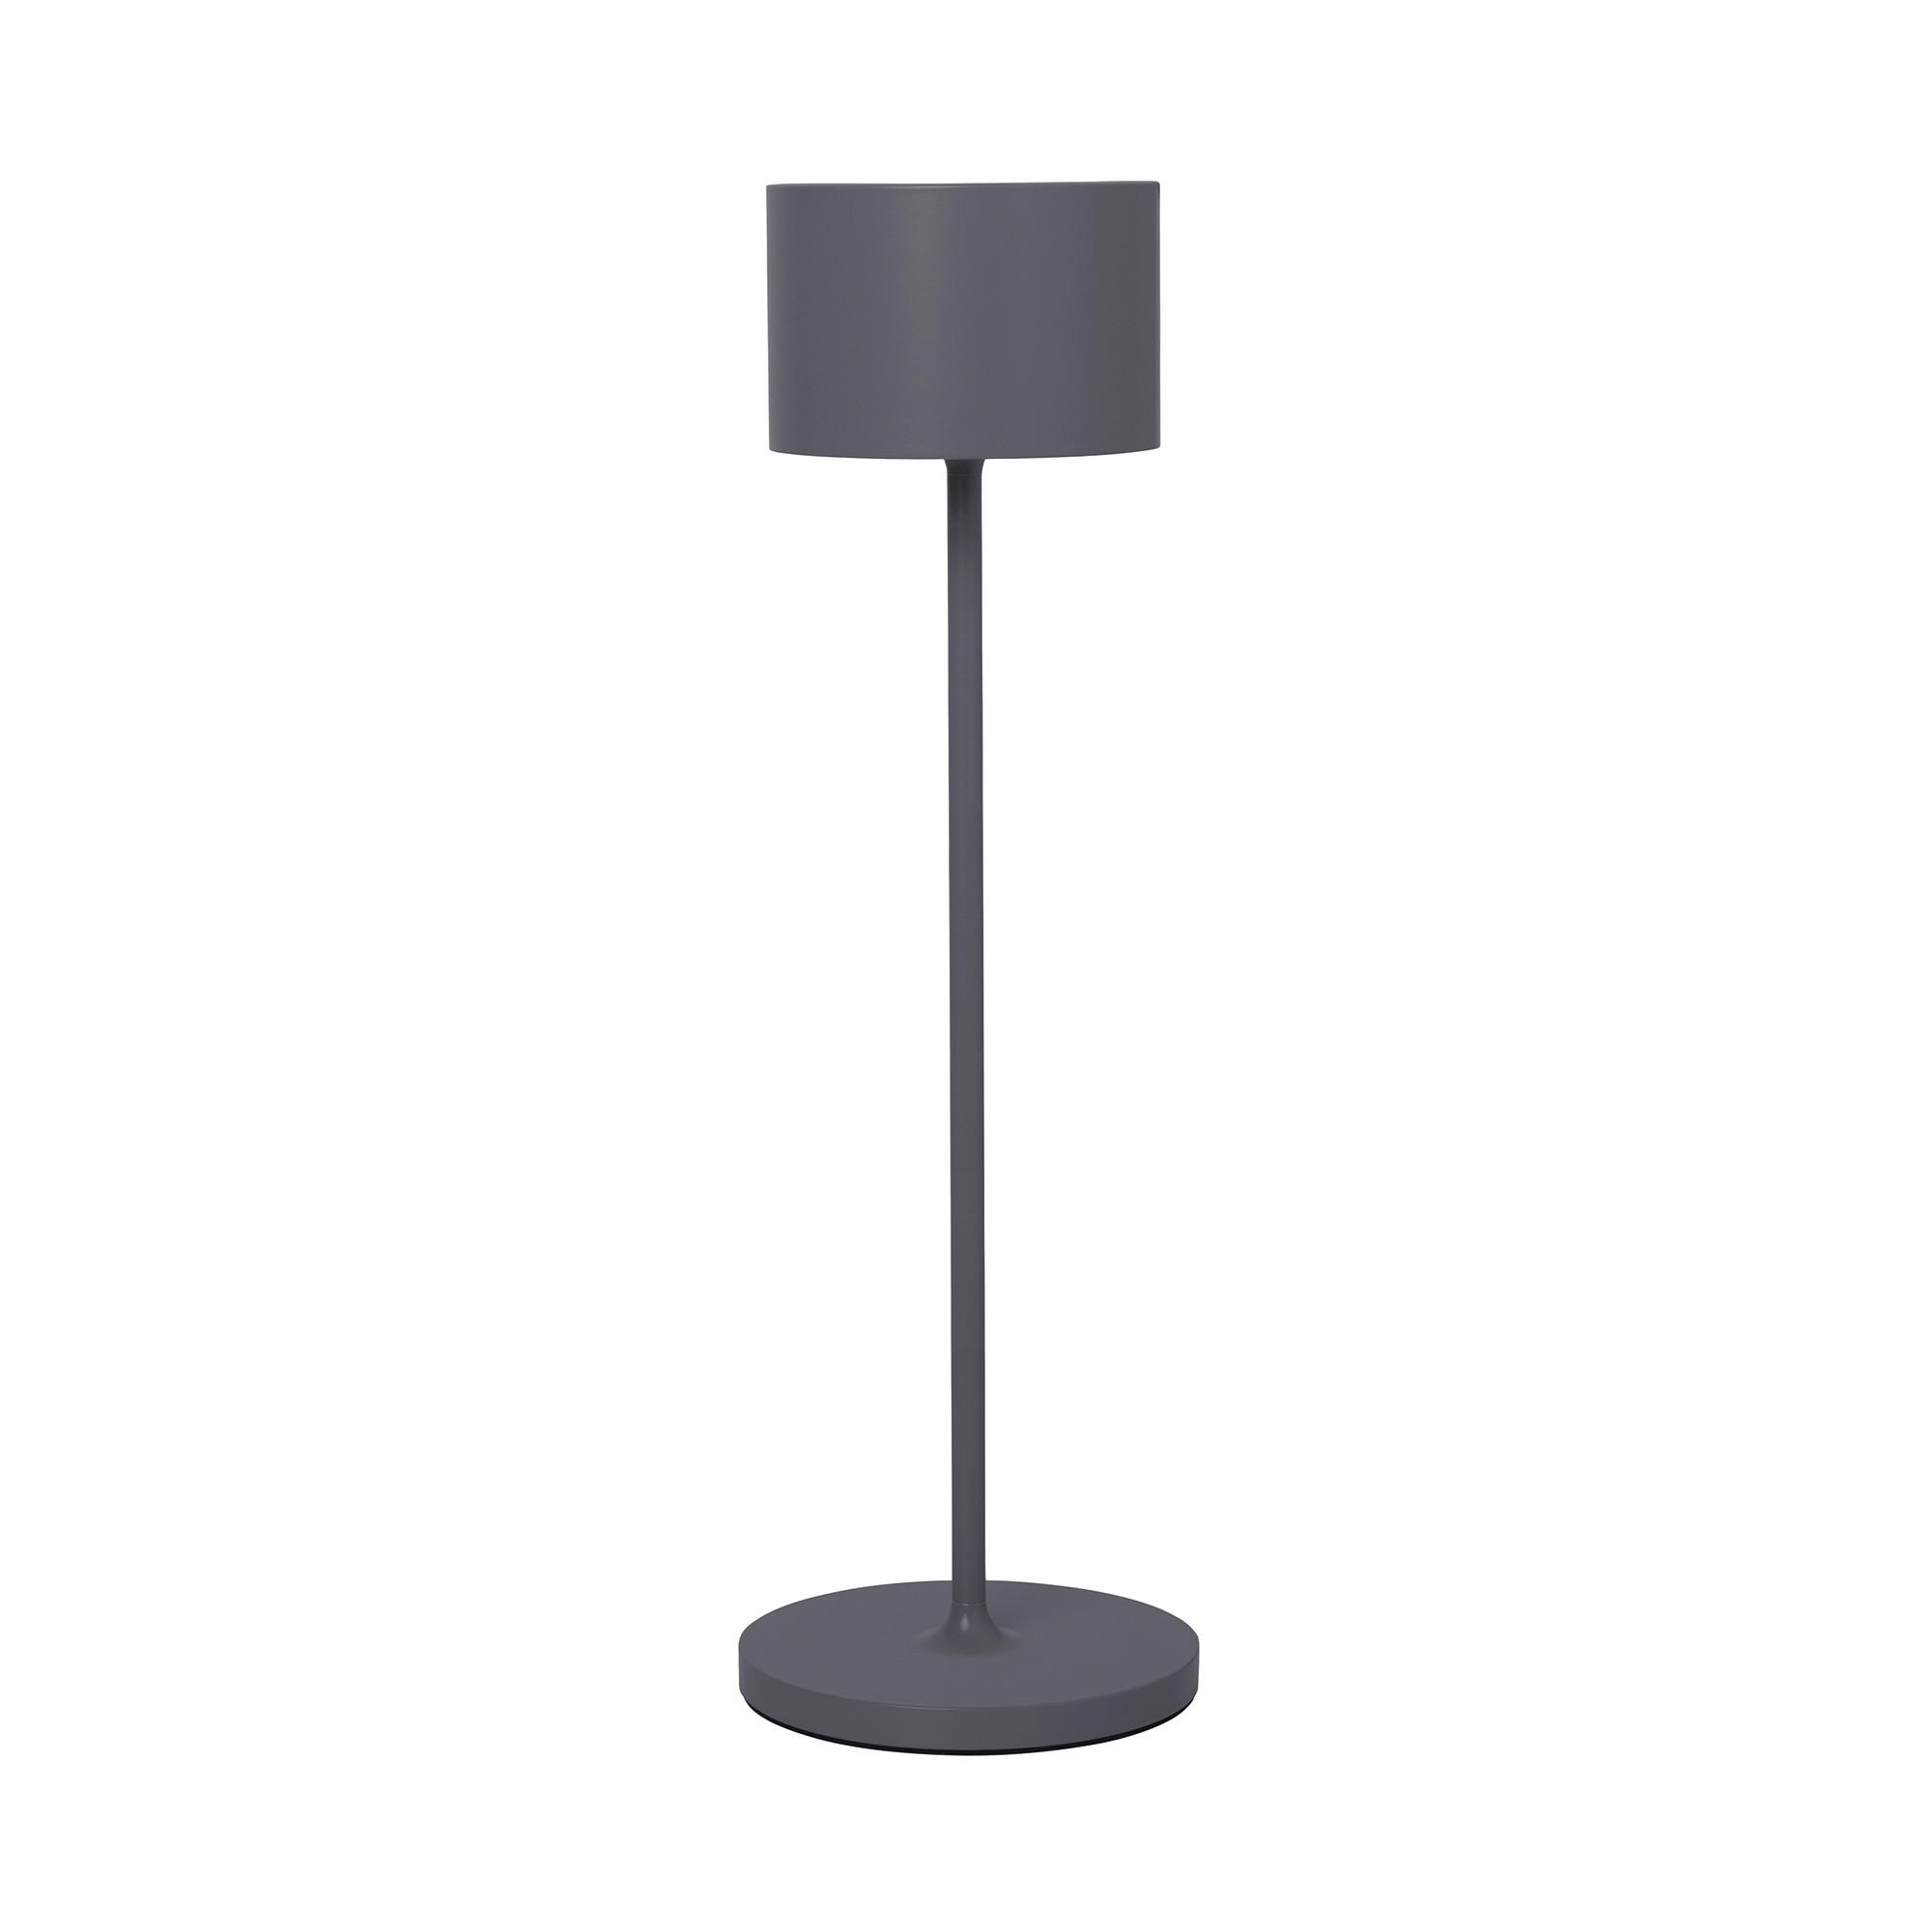 LED-TISCHLEUCHTE 11/33,5 cm   - Anthrazit, Design, Metall (11/33,5cm) - Blomus